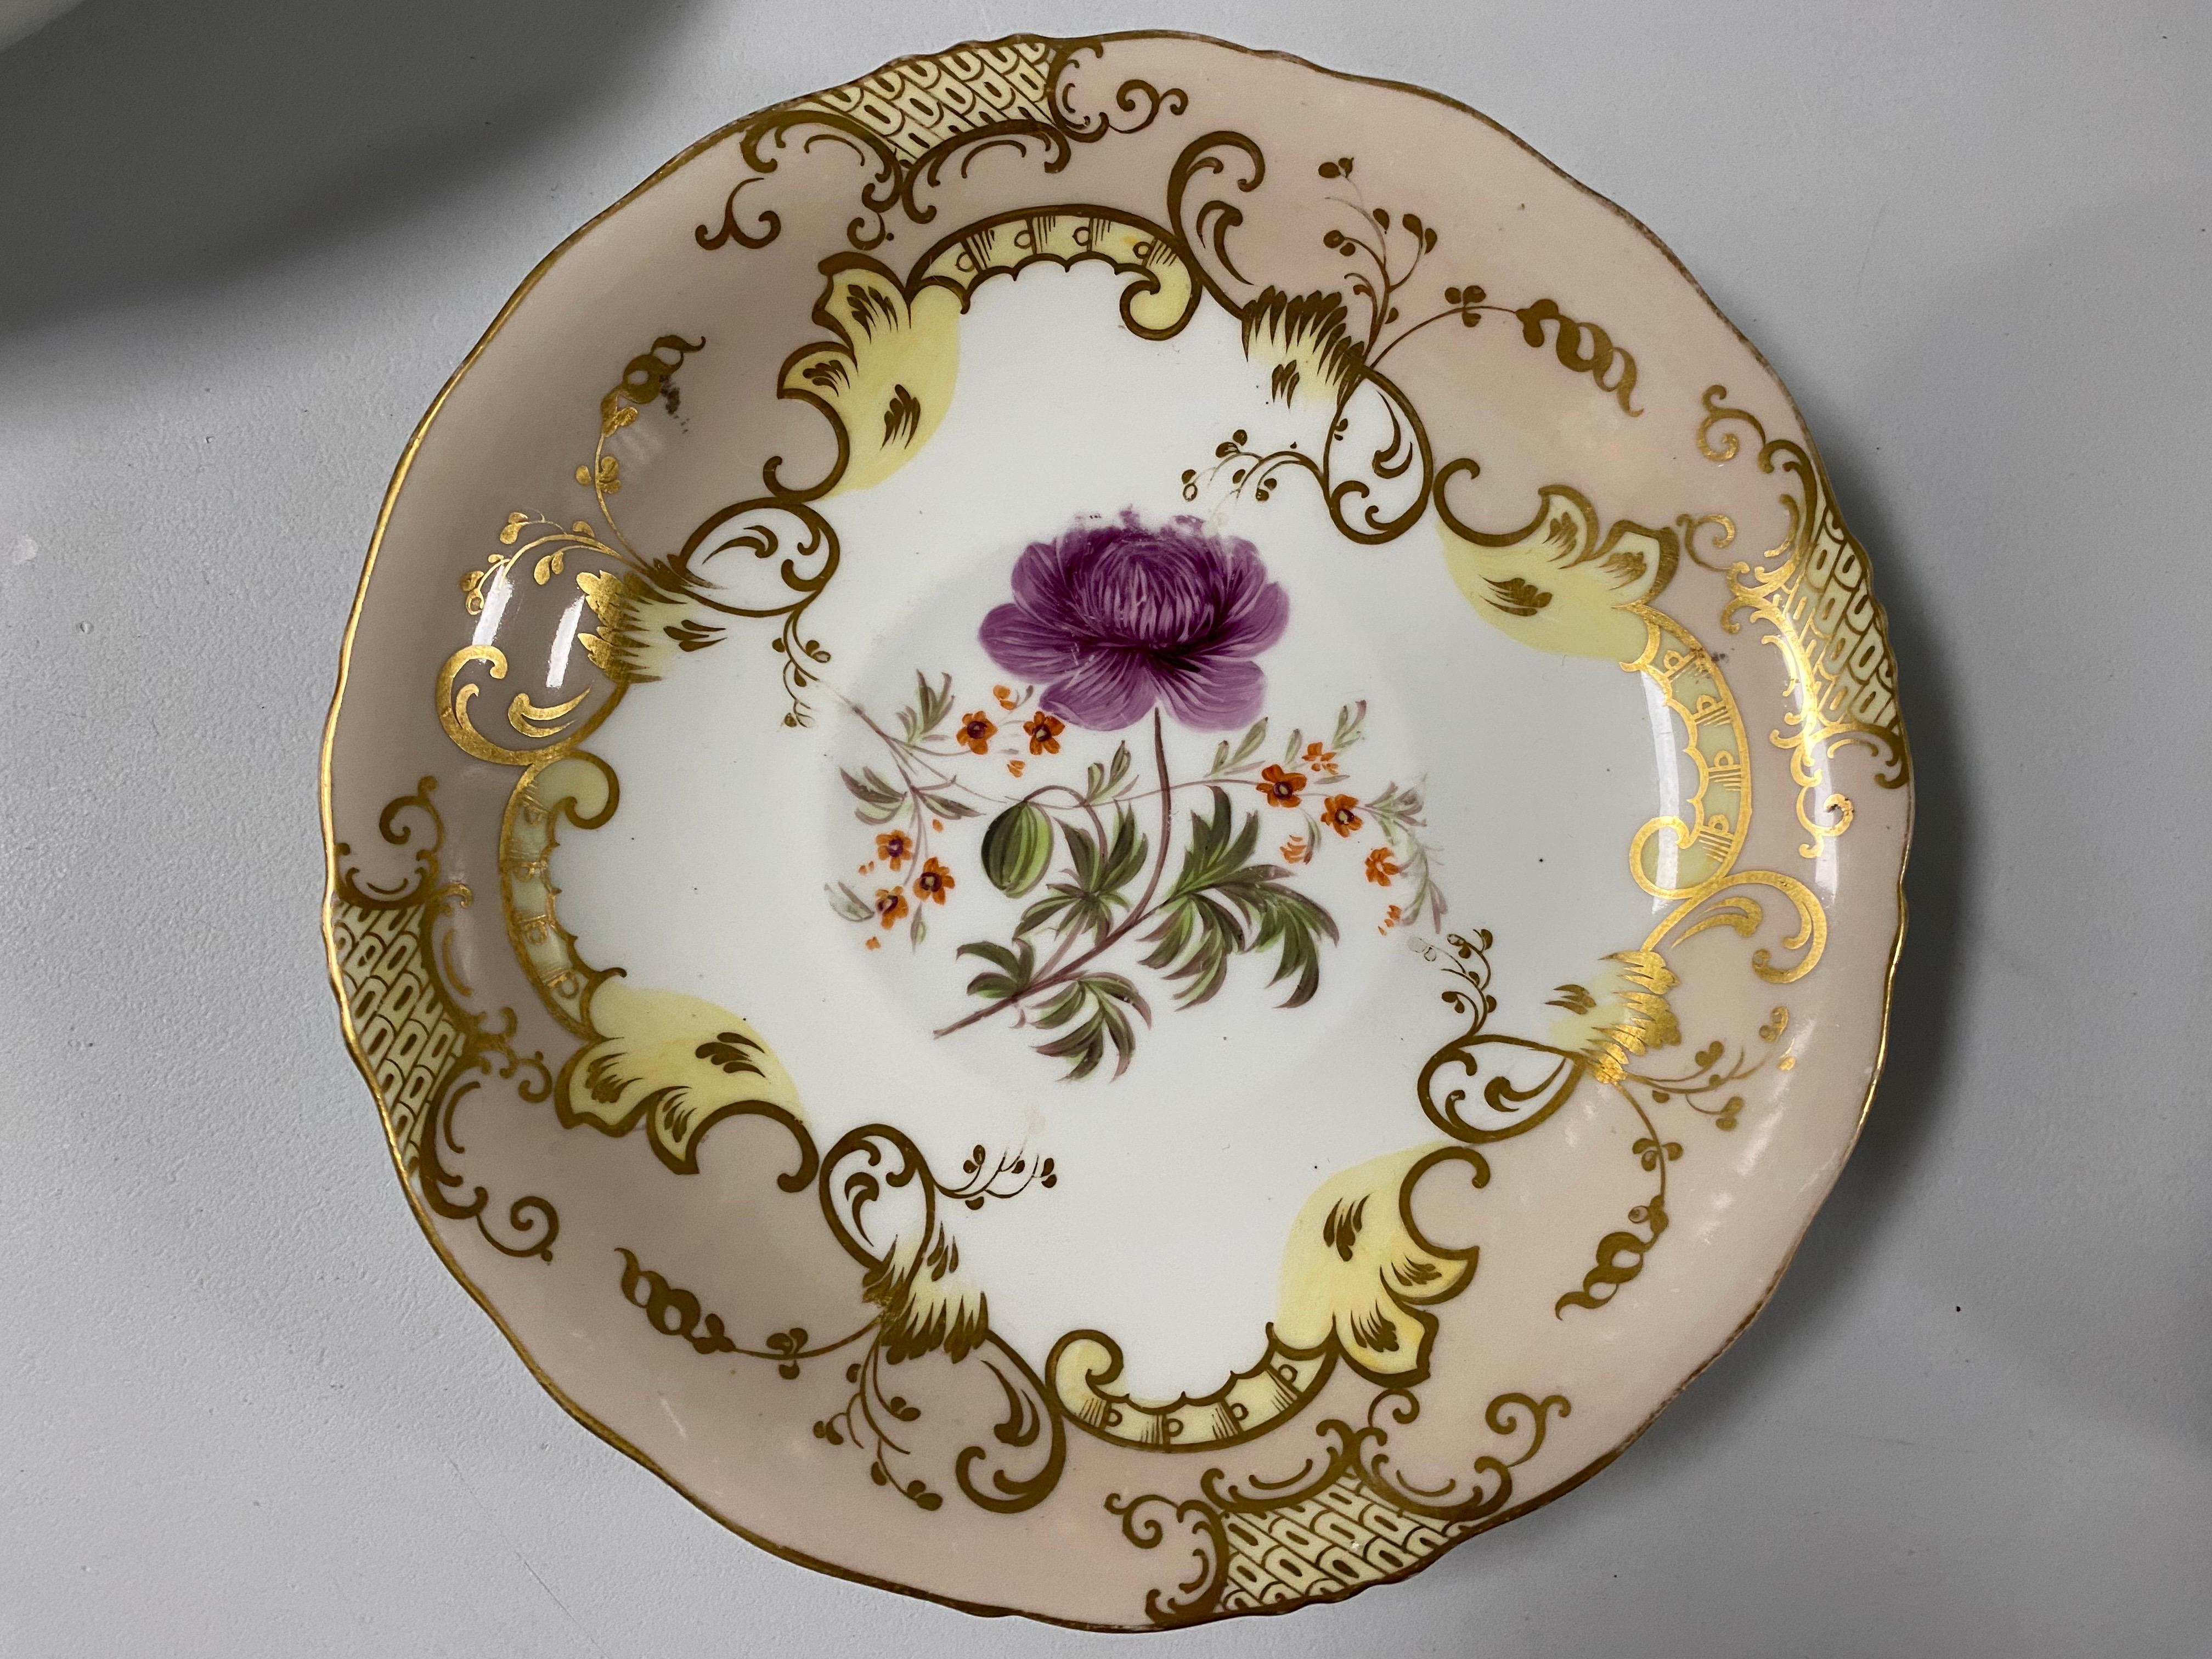 Paar Coalport Porcelain Untertassen, Beige & Blumen, von Joseph Birbeck, um 1847
Hübsches Gold auf beigem Grund mit einer rosa Tulpe auf der einen und einer lila Blume auf der anderen Seite. Auf der Unterseite ist beides mit 8854 gekennzeichnet.